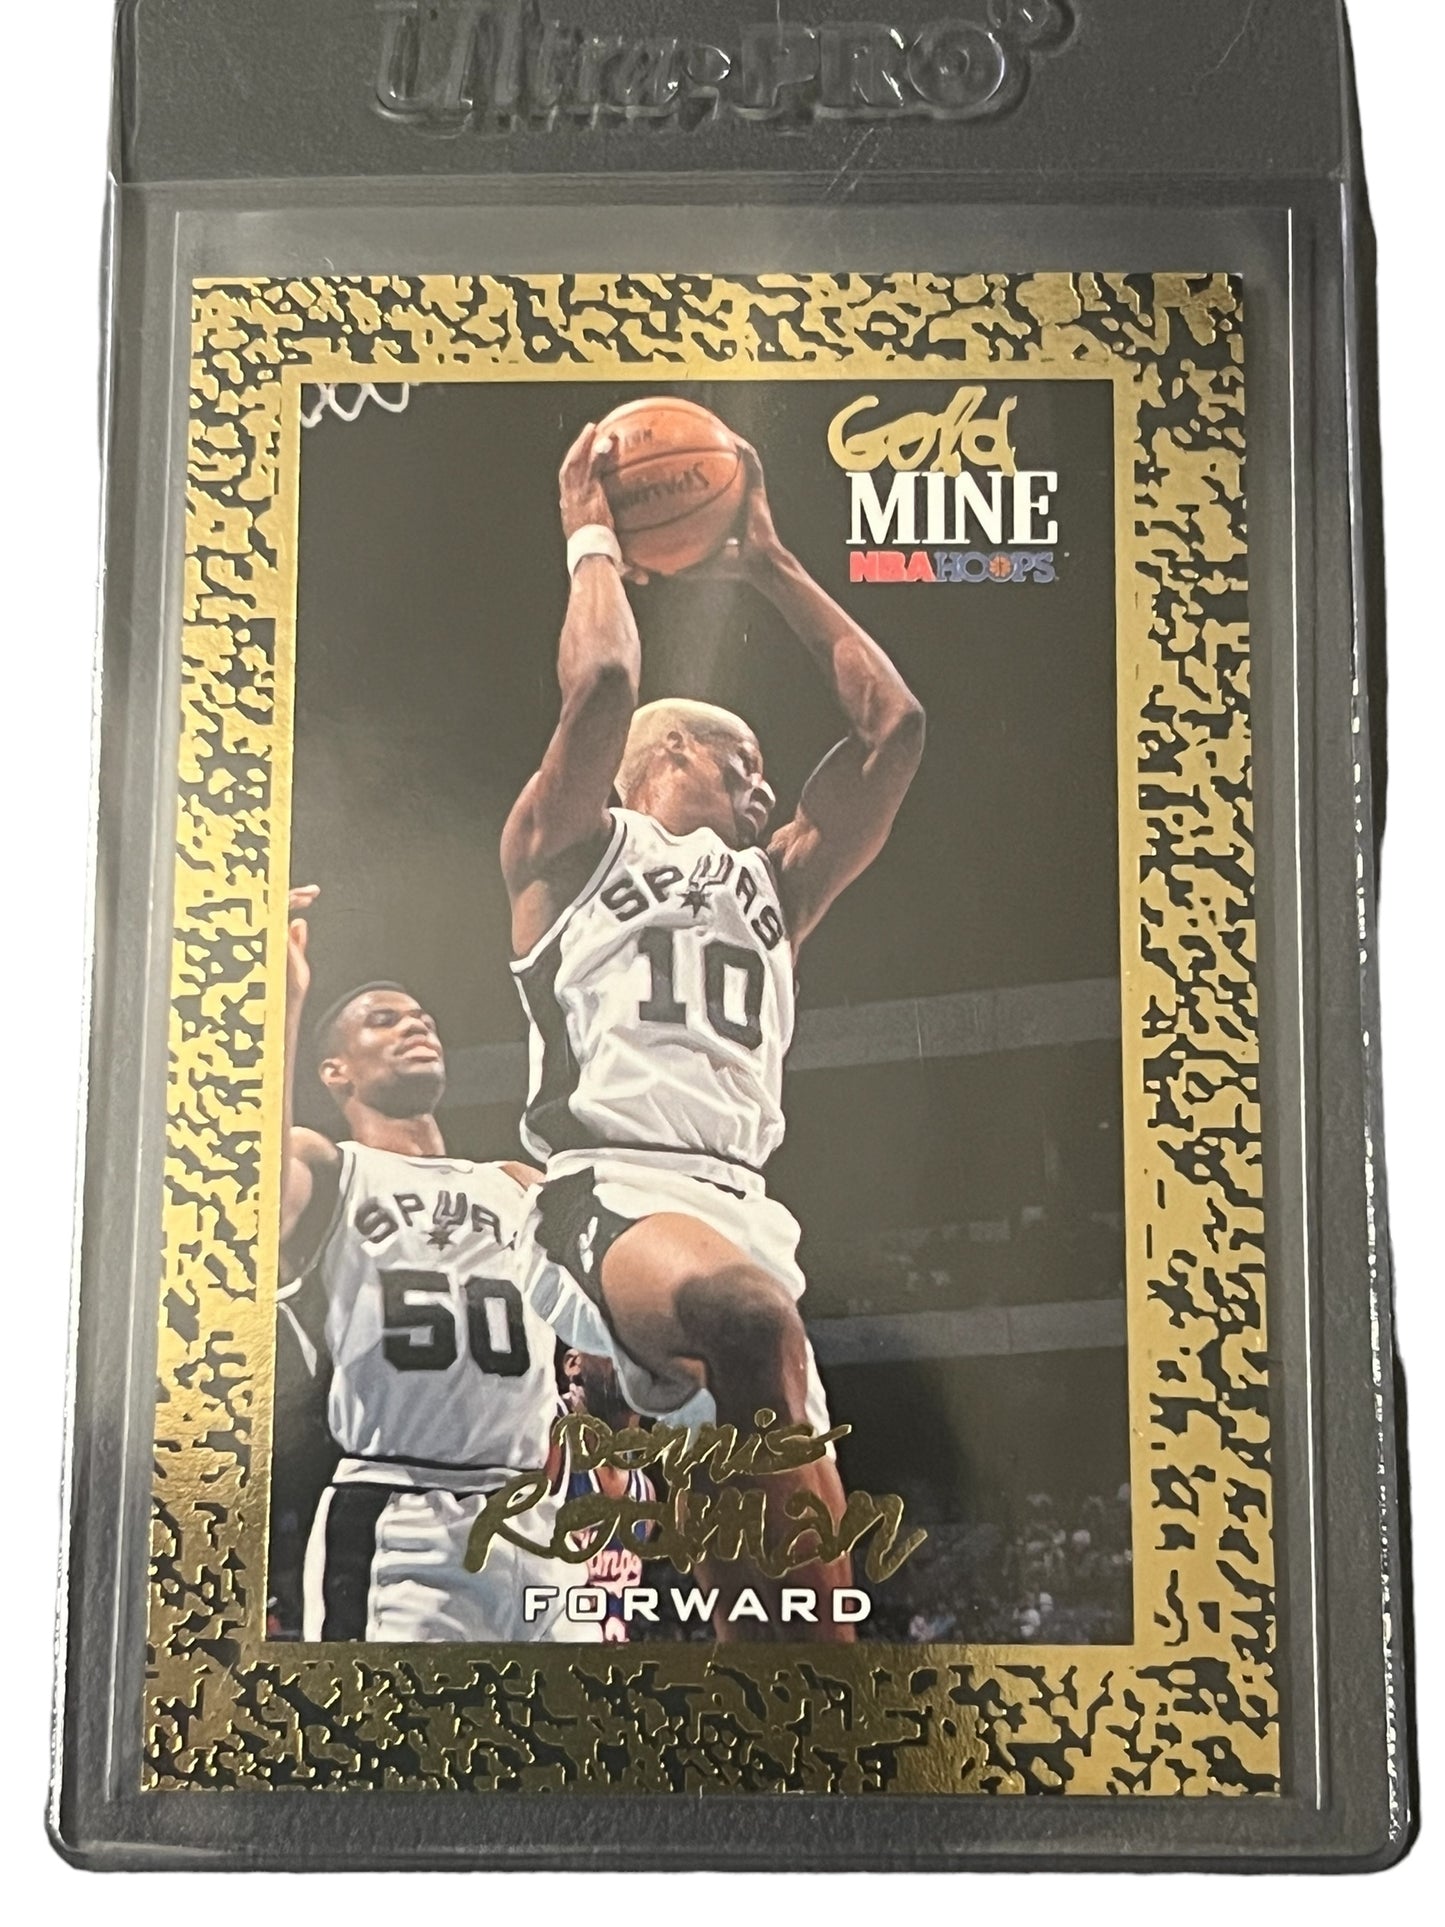 1994-95 NBA Hoops Gold Mine Dennis Rodman GOLD SP - Spurs - HOF Gold SP - Set of 3